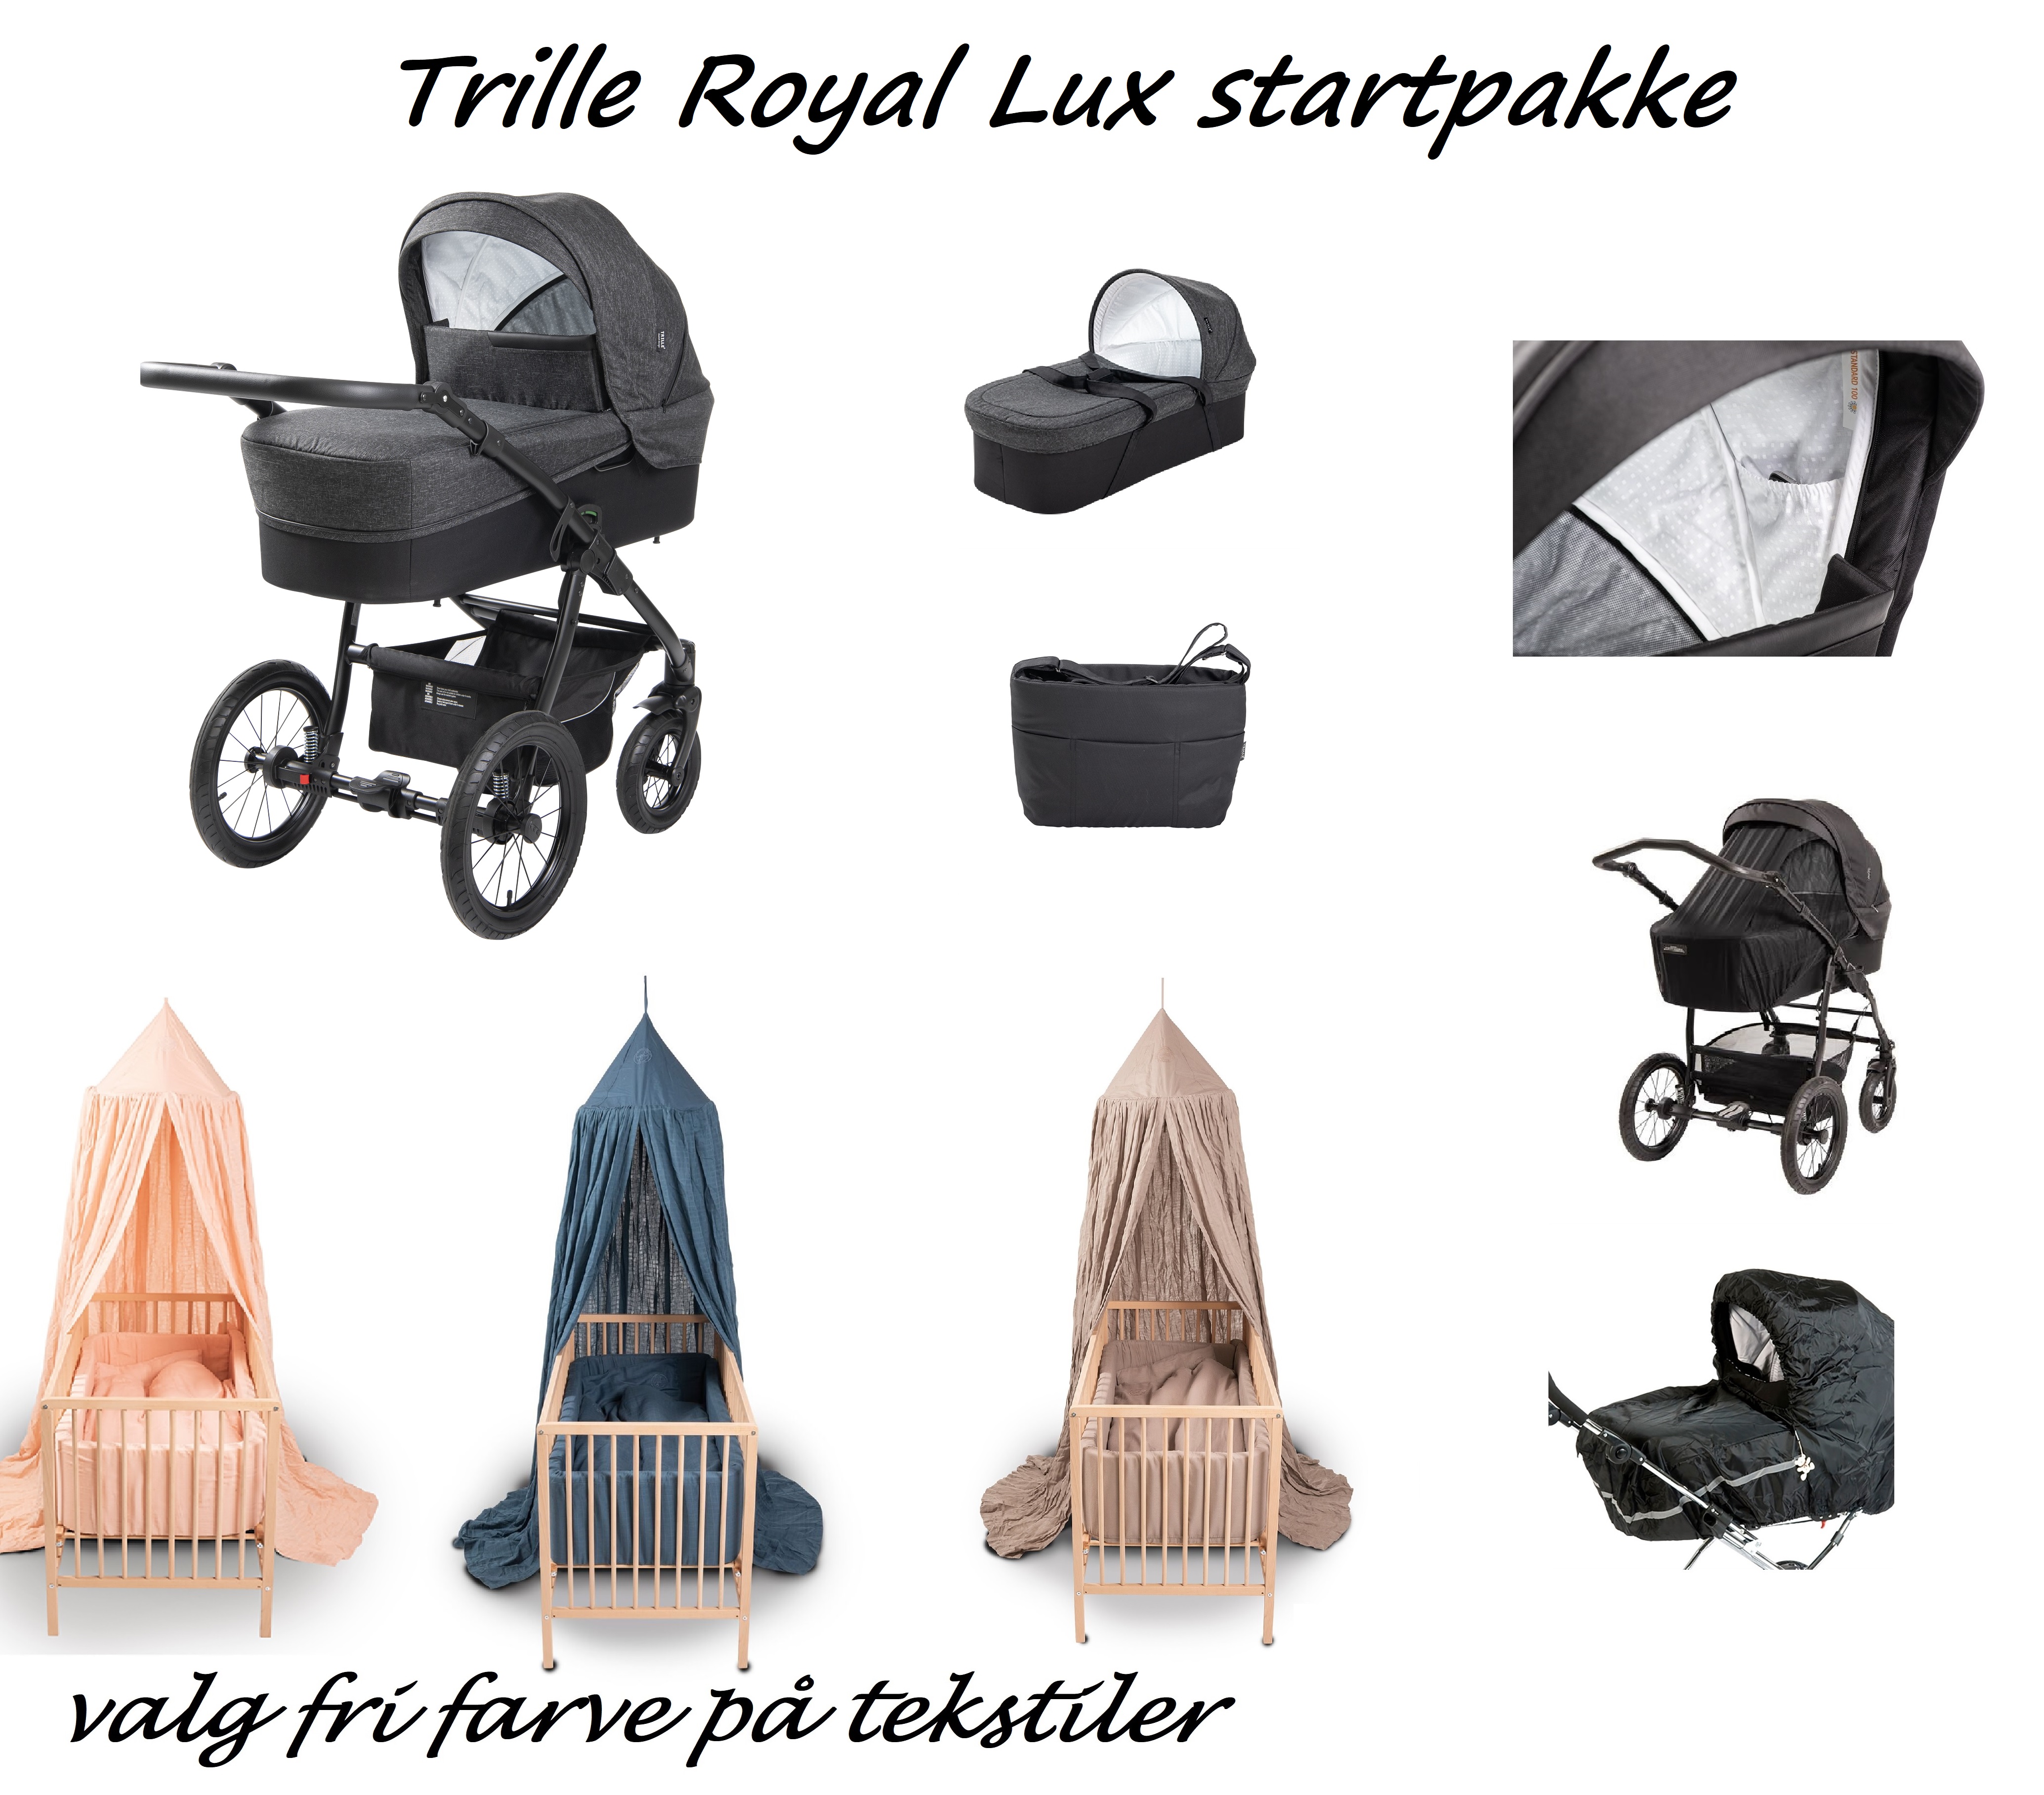 Kro tro renæssance Trille Royal Lux startpakke, Coal - BarnevognsHuset.dk